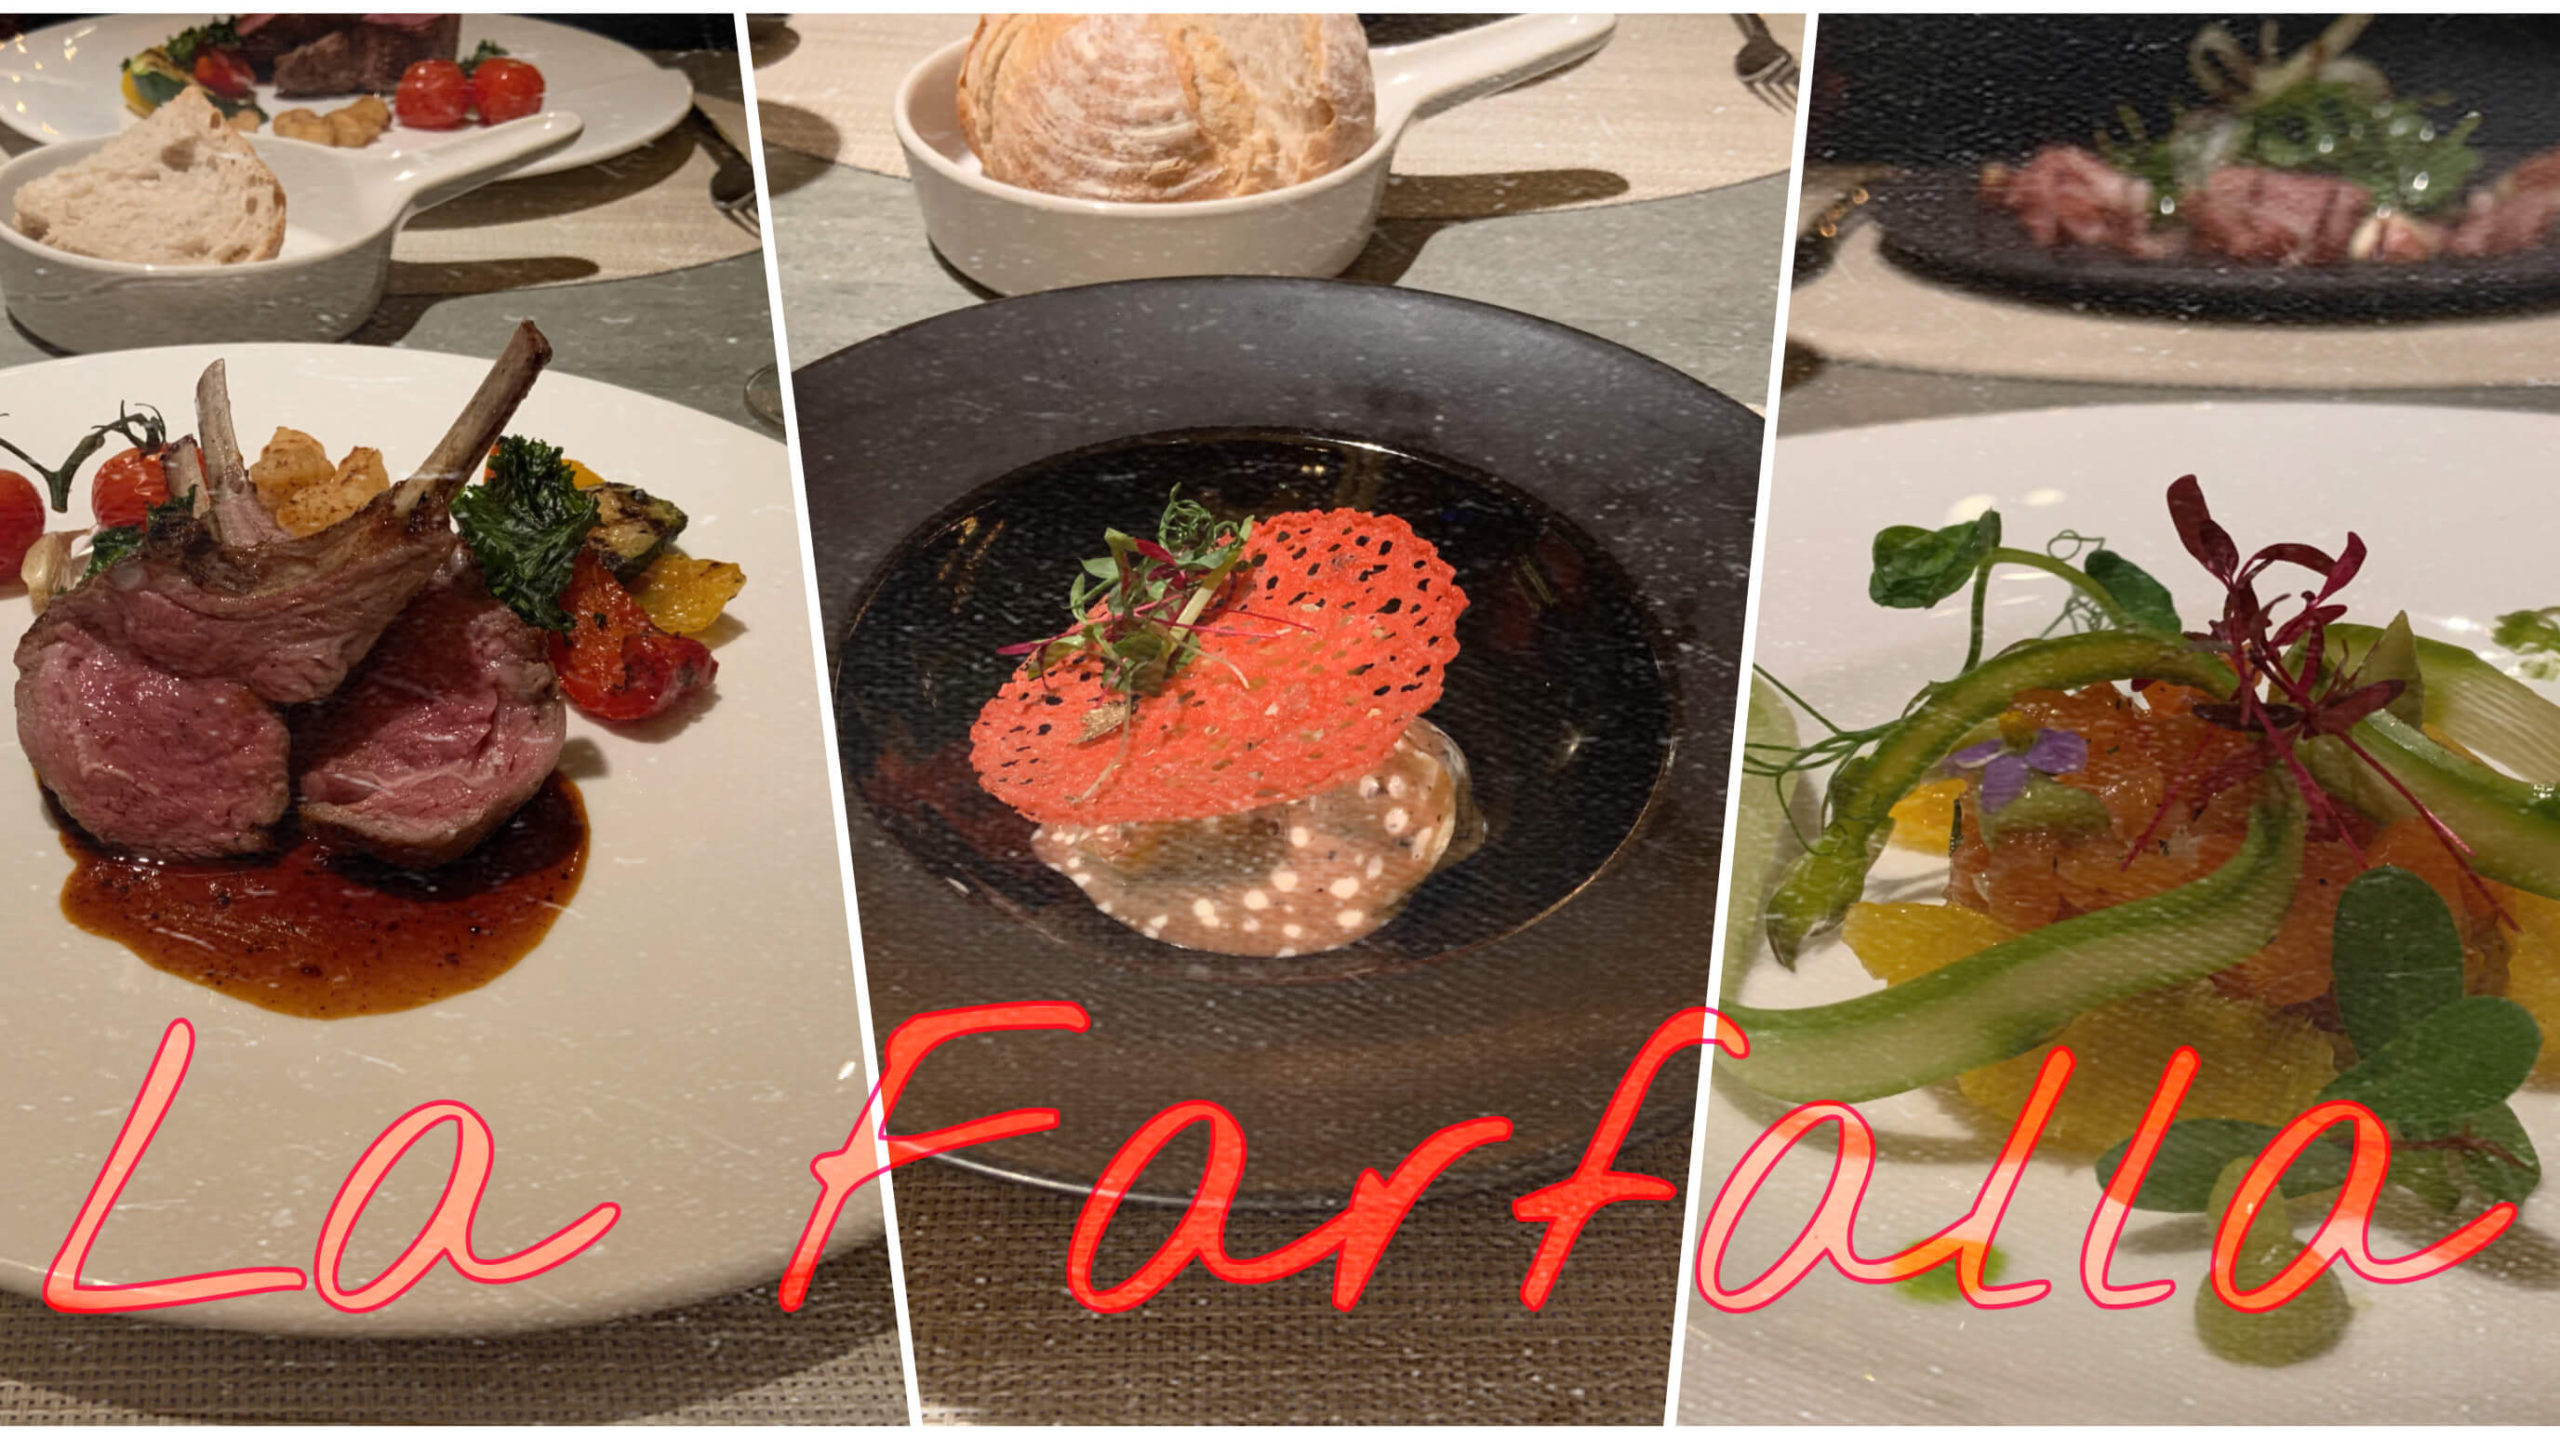 信義区のおしゃれホテル内 お祝いディナーにぴったりの素敵レストラン La Farfalla義式餐廳 Humble House台北 Cocointwblog